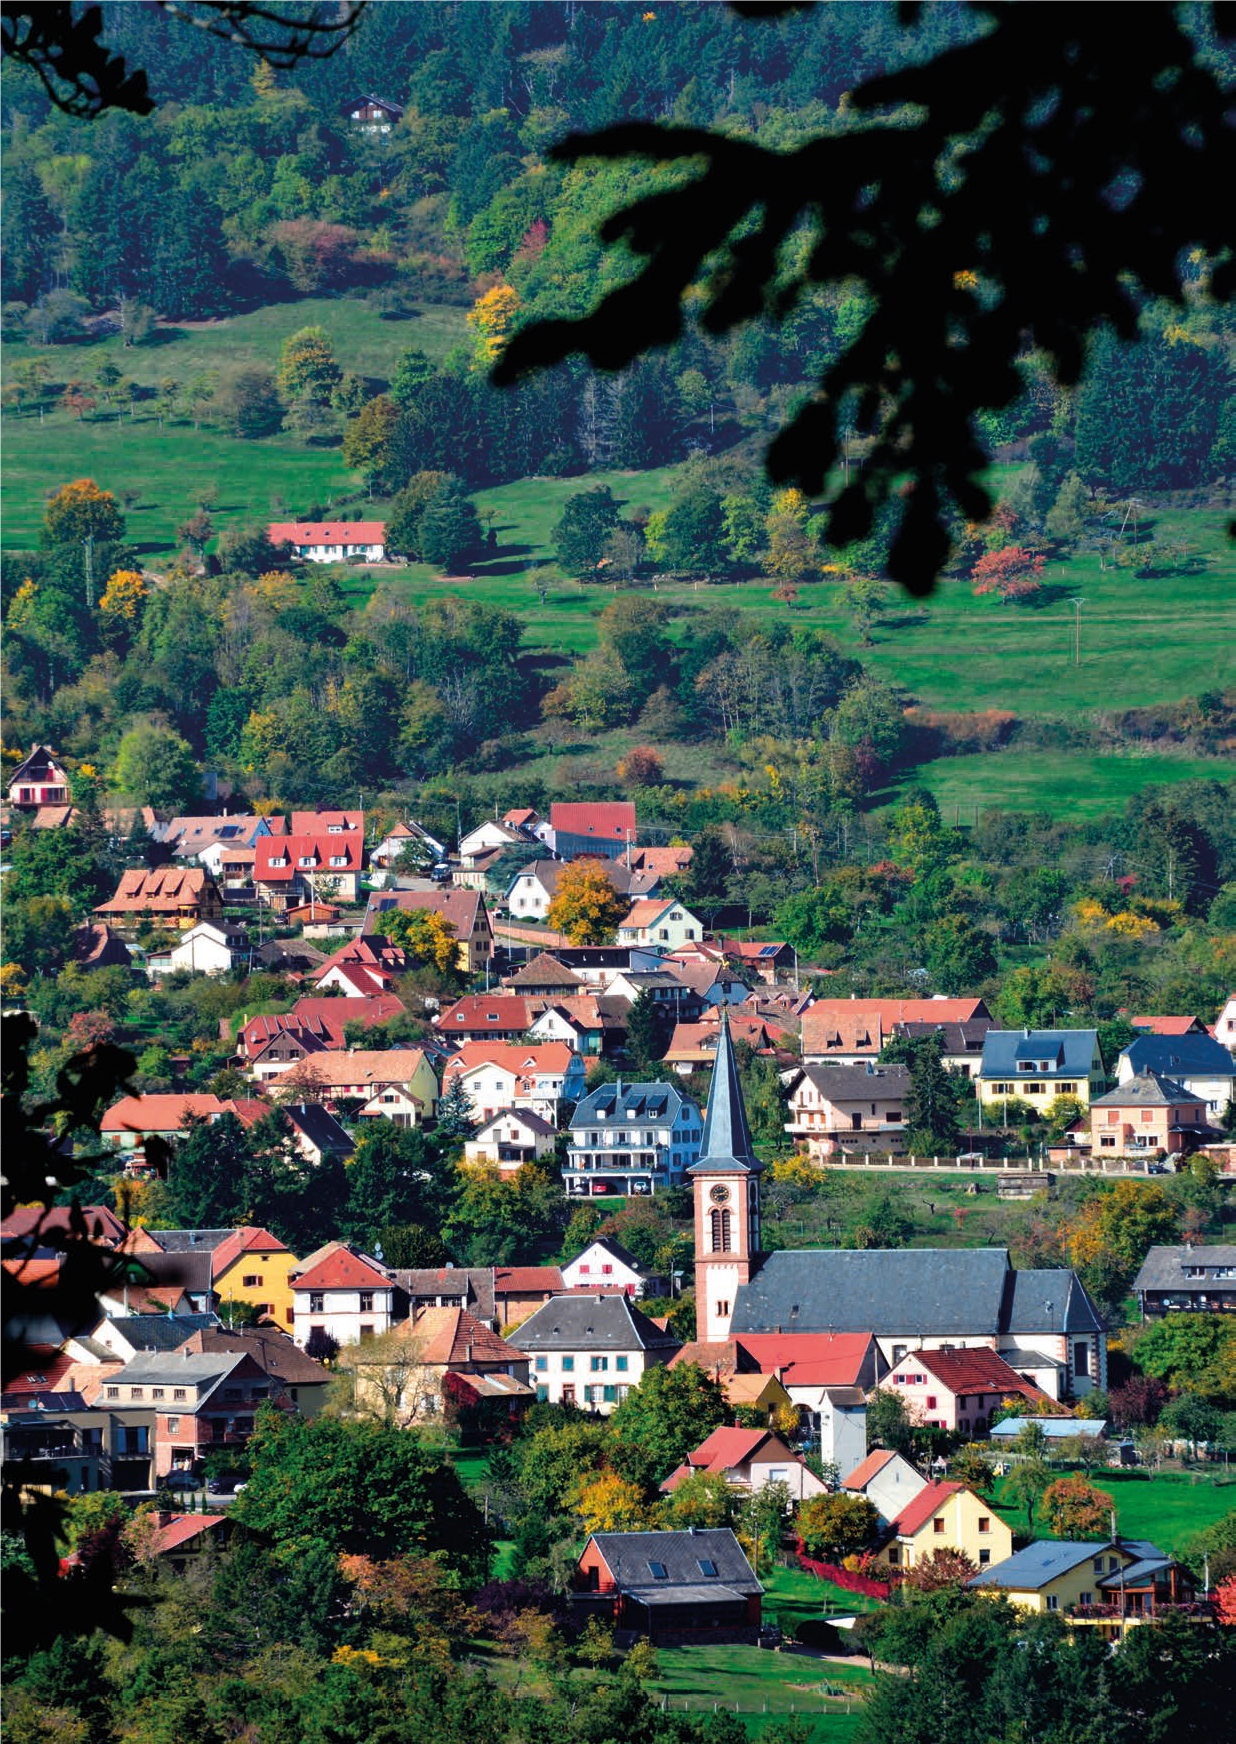 Commune de Thannenkirch